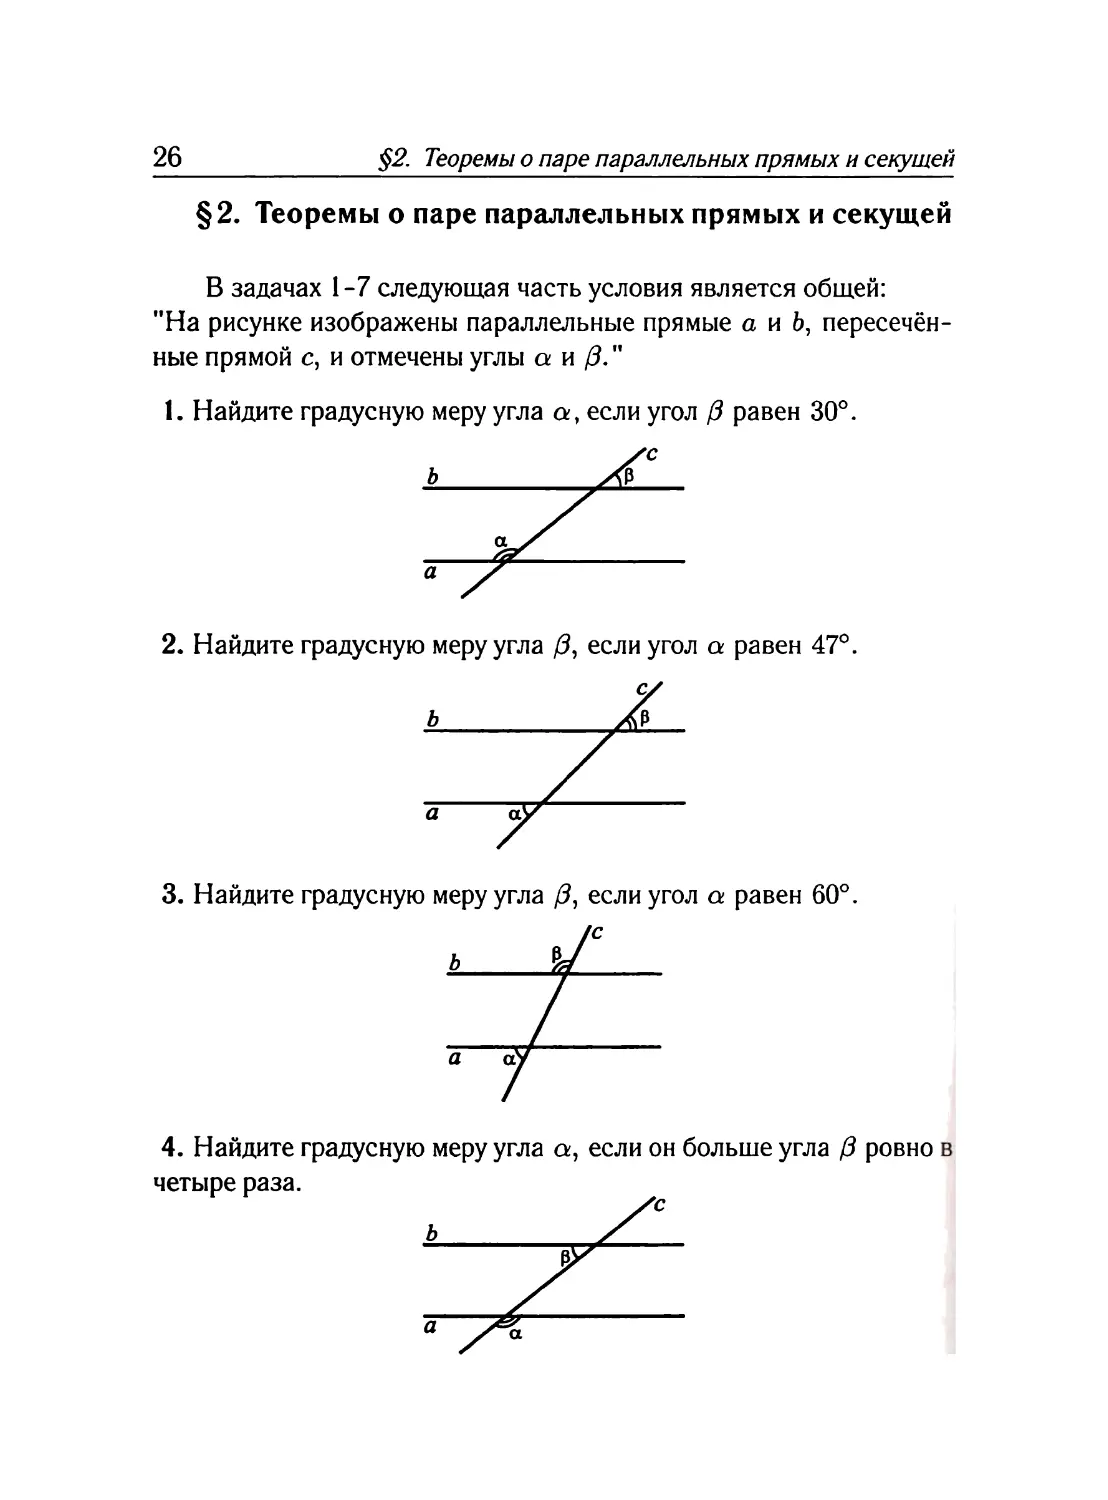 §2. Теоремы о паре параллельных прямых и секущей